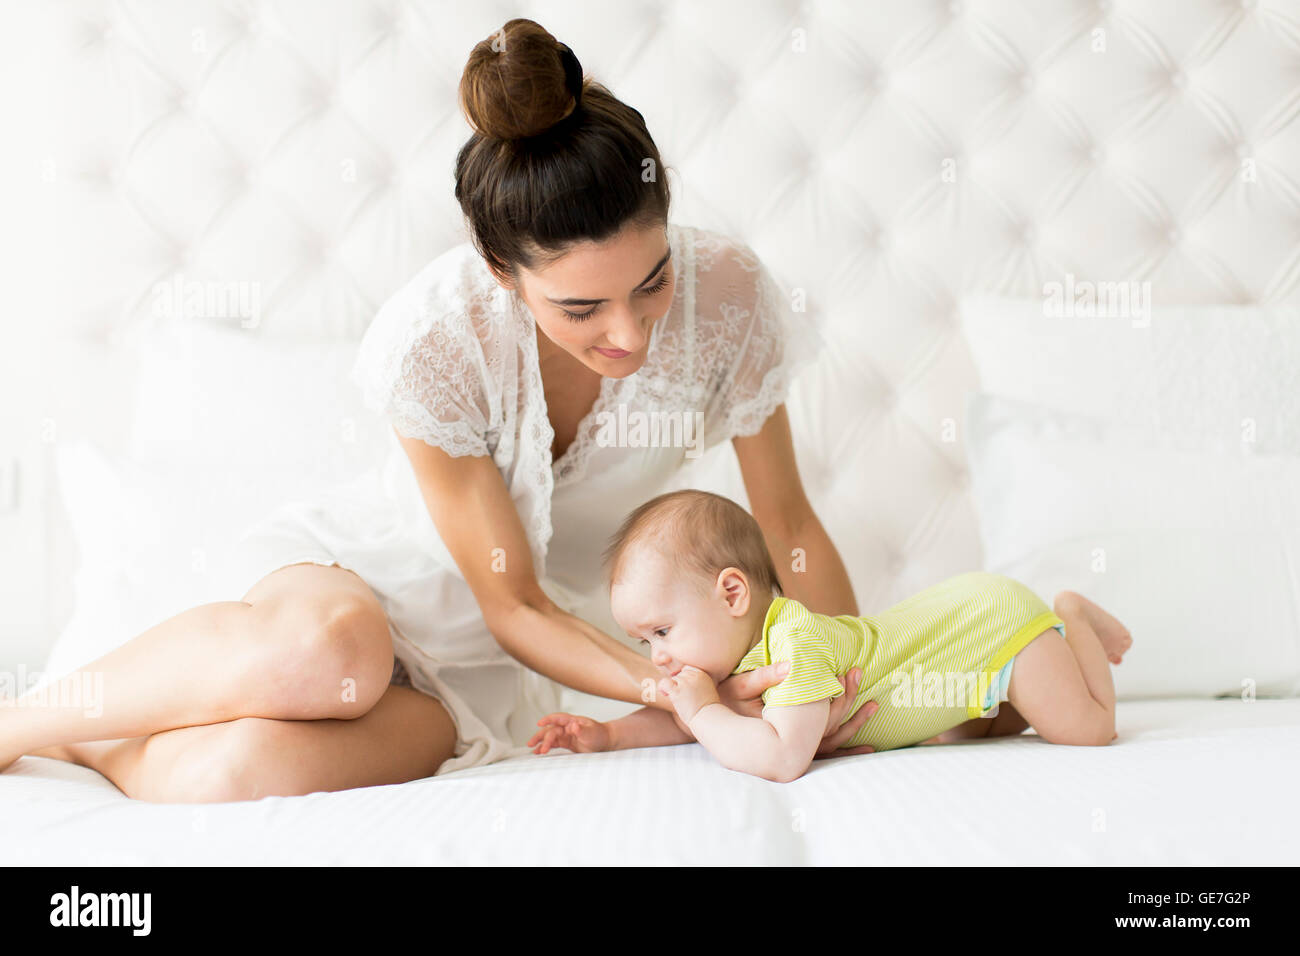 Jeune maman avec un bébé sur le lit Banque D'Images